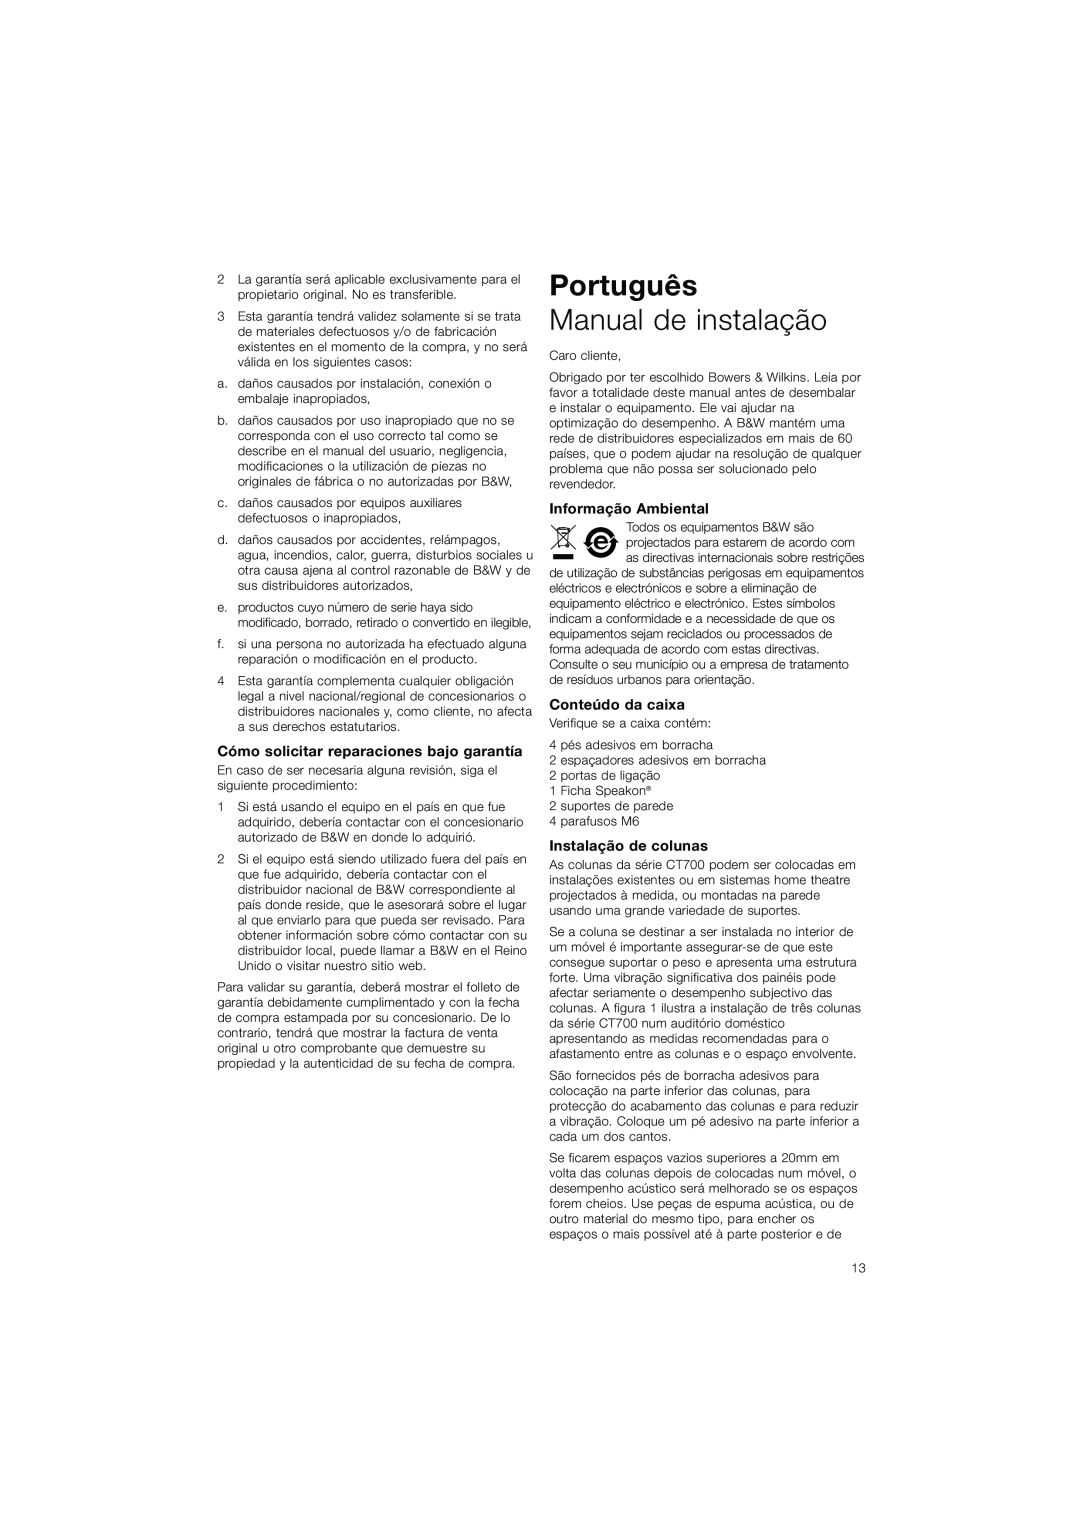 Bowers & Wilkins CT7.3 LCRS Português, Manual de instalação, Cómo solicitar reparaciones bajo garantía, Conteúdo da caixa 